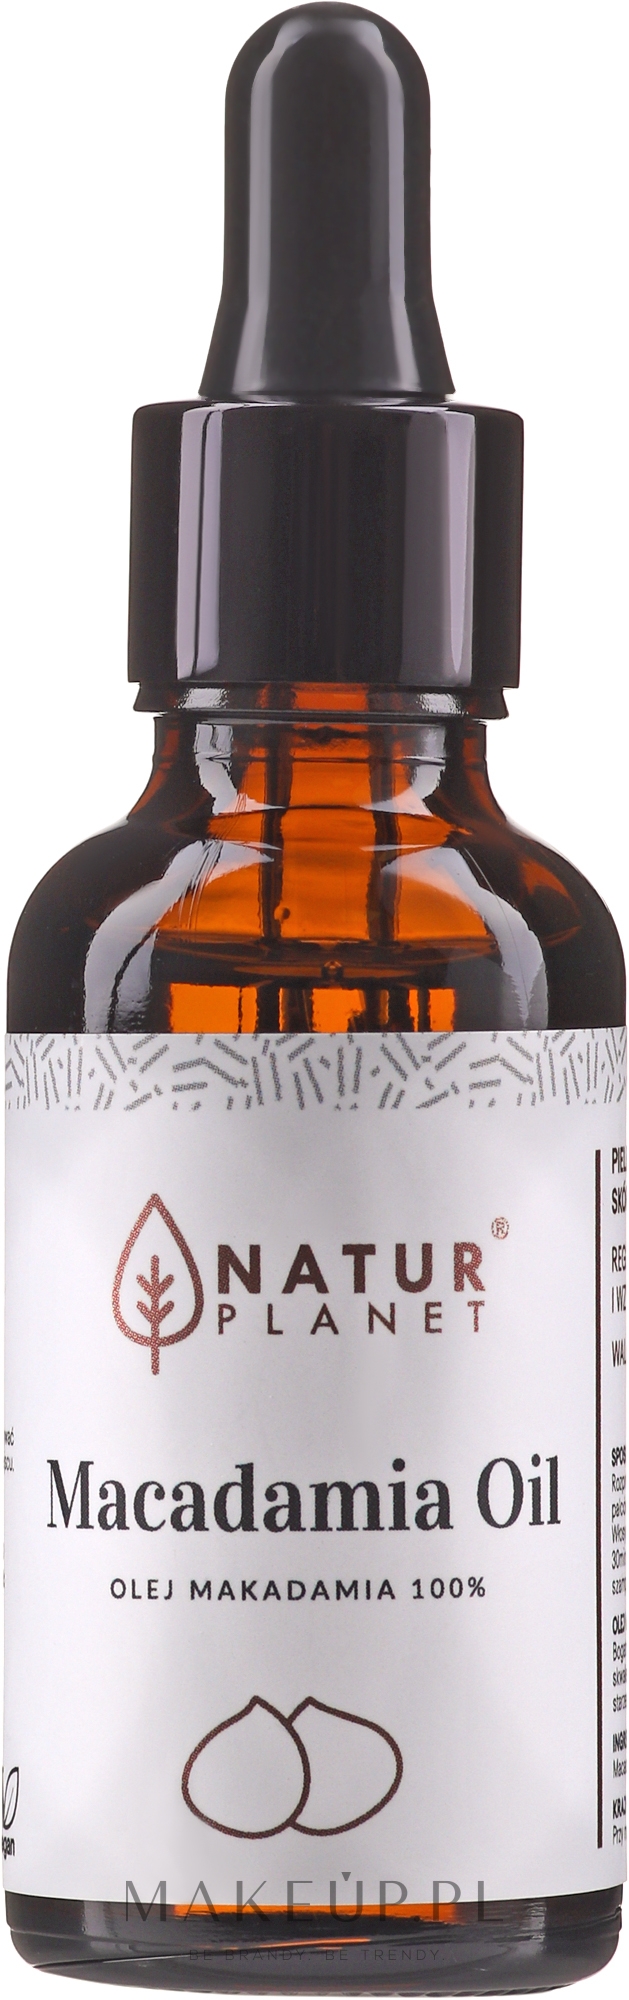 100% olej makadamia - Natur Planet Macadamia Oil 100% — Zdjęcie 30 ml